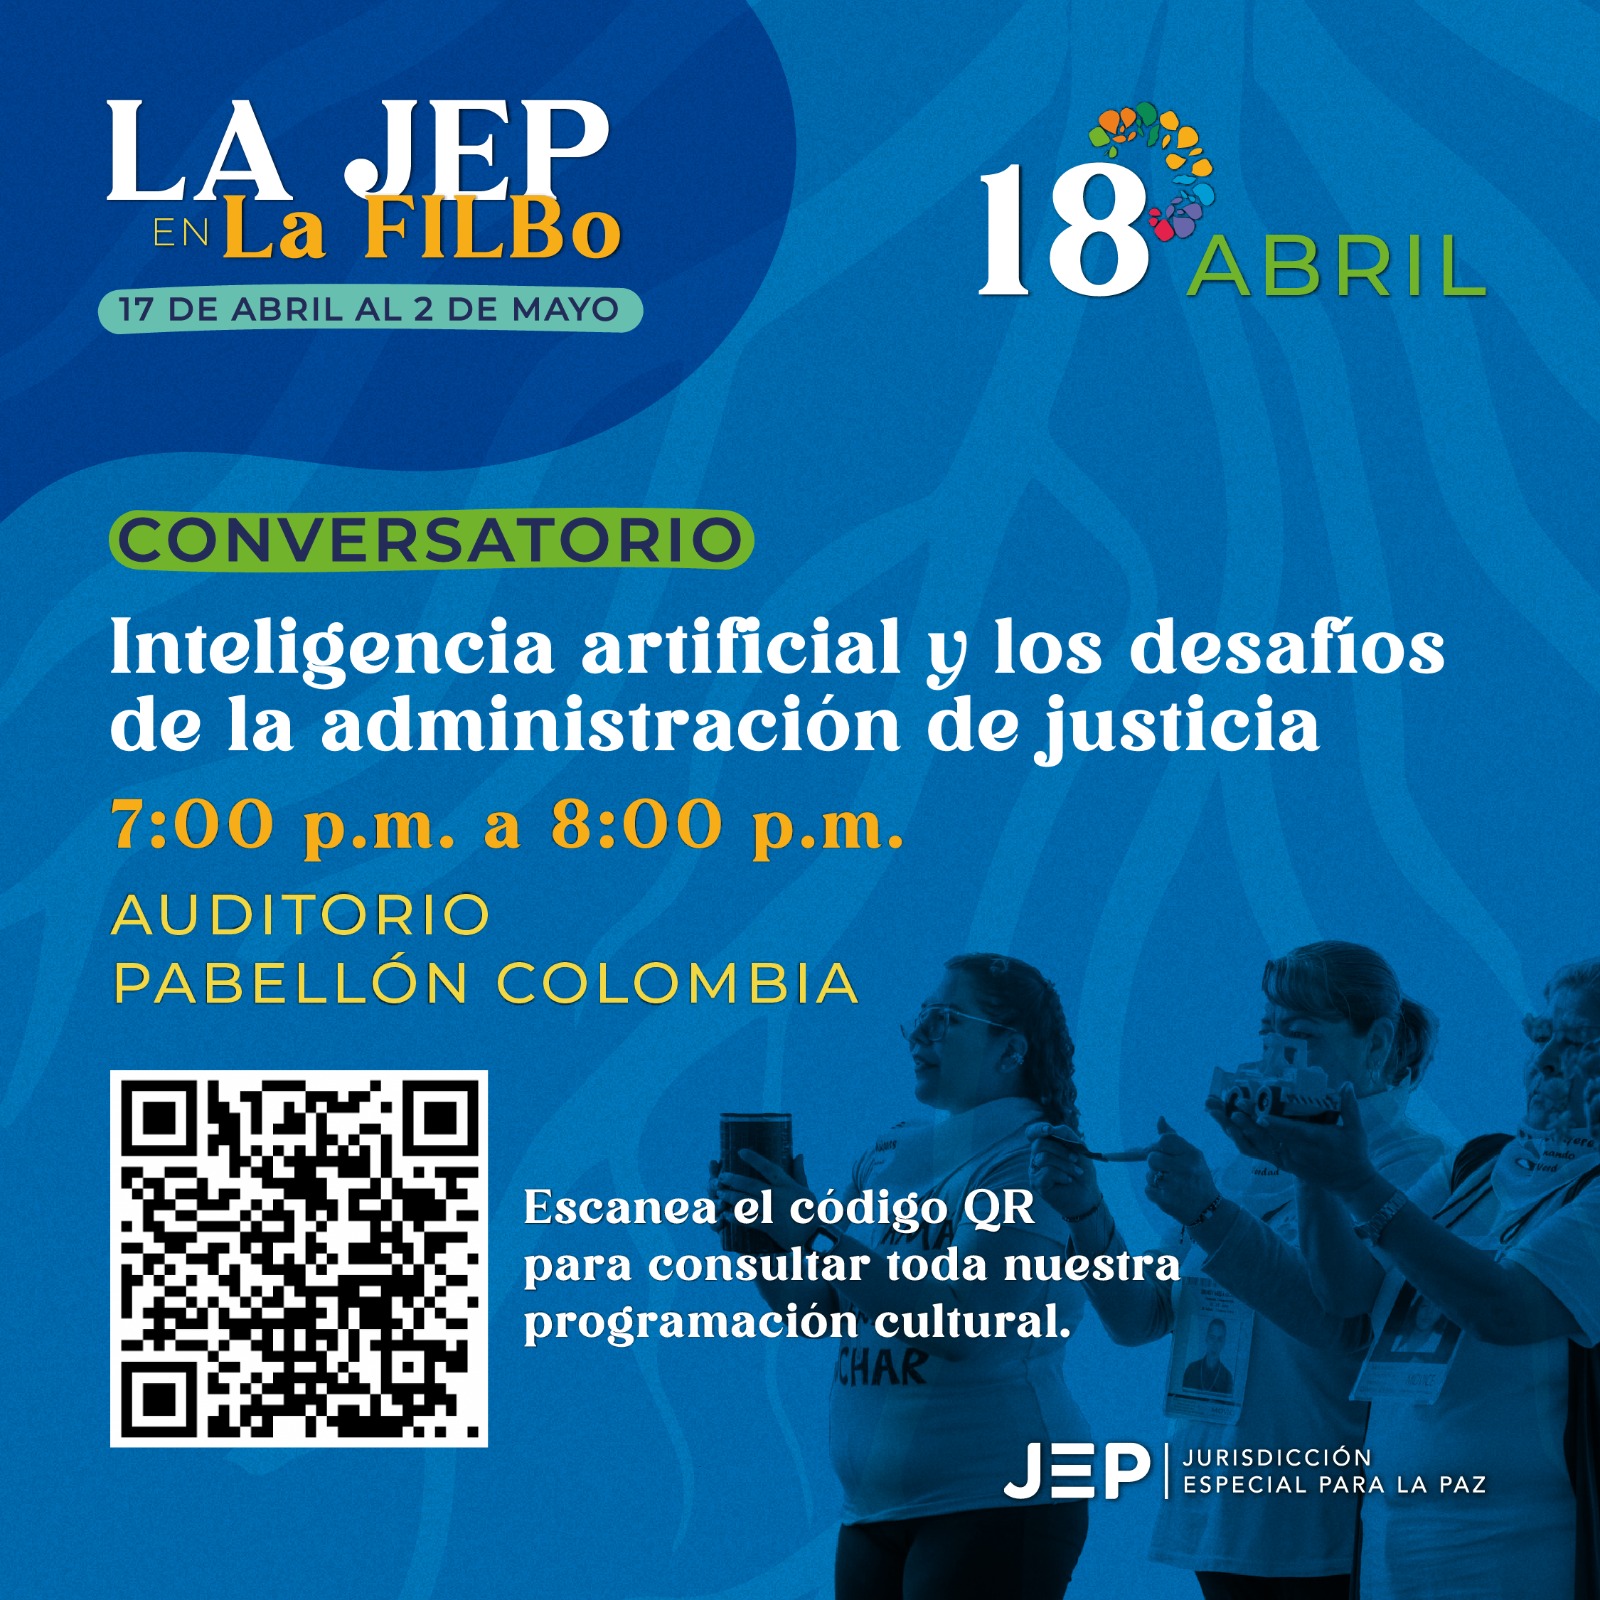 CONVERSATORIO
Inteligencia artificial y los desafíos de la administración de justicia, de 7:00 p.m. a 8:00 p.m. AUDITORIO PABELLÓN COLOMBIA